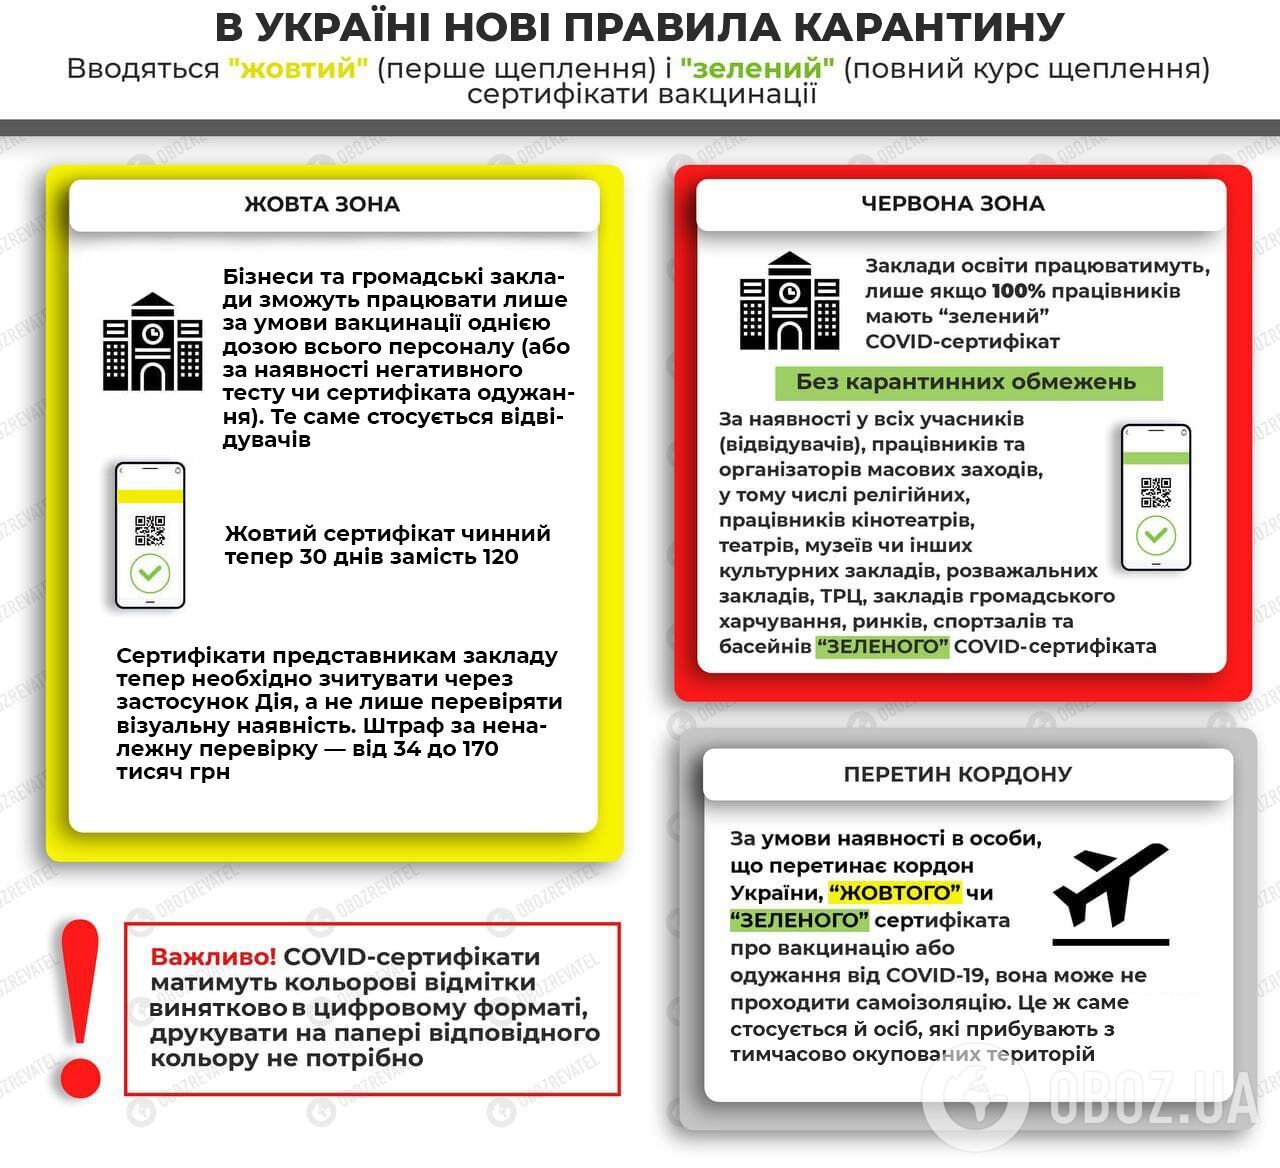 Правила карантина в Украине